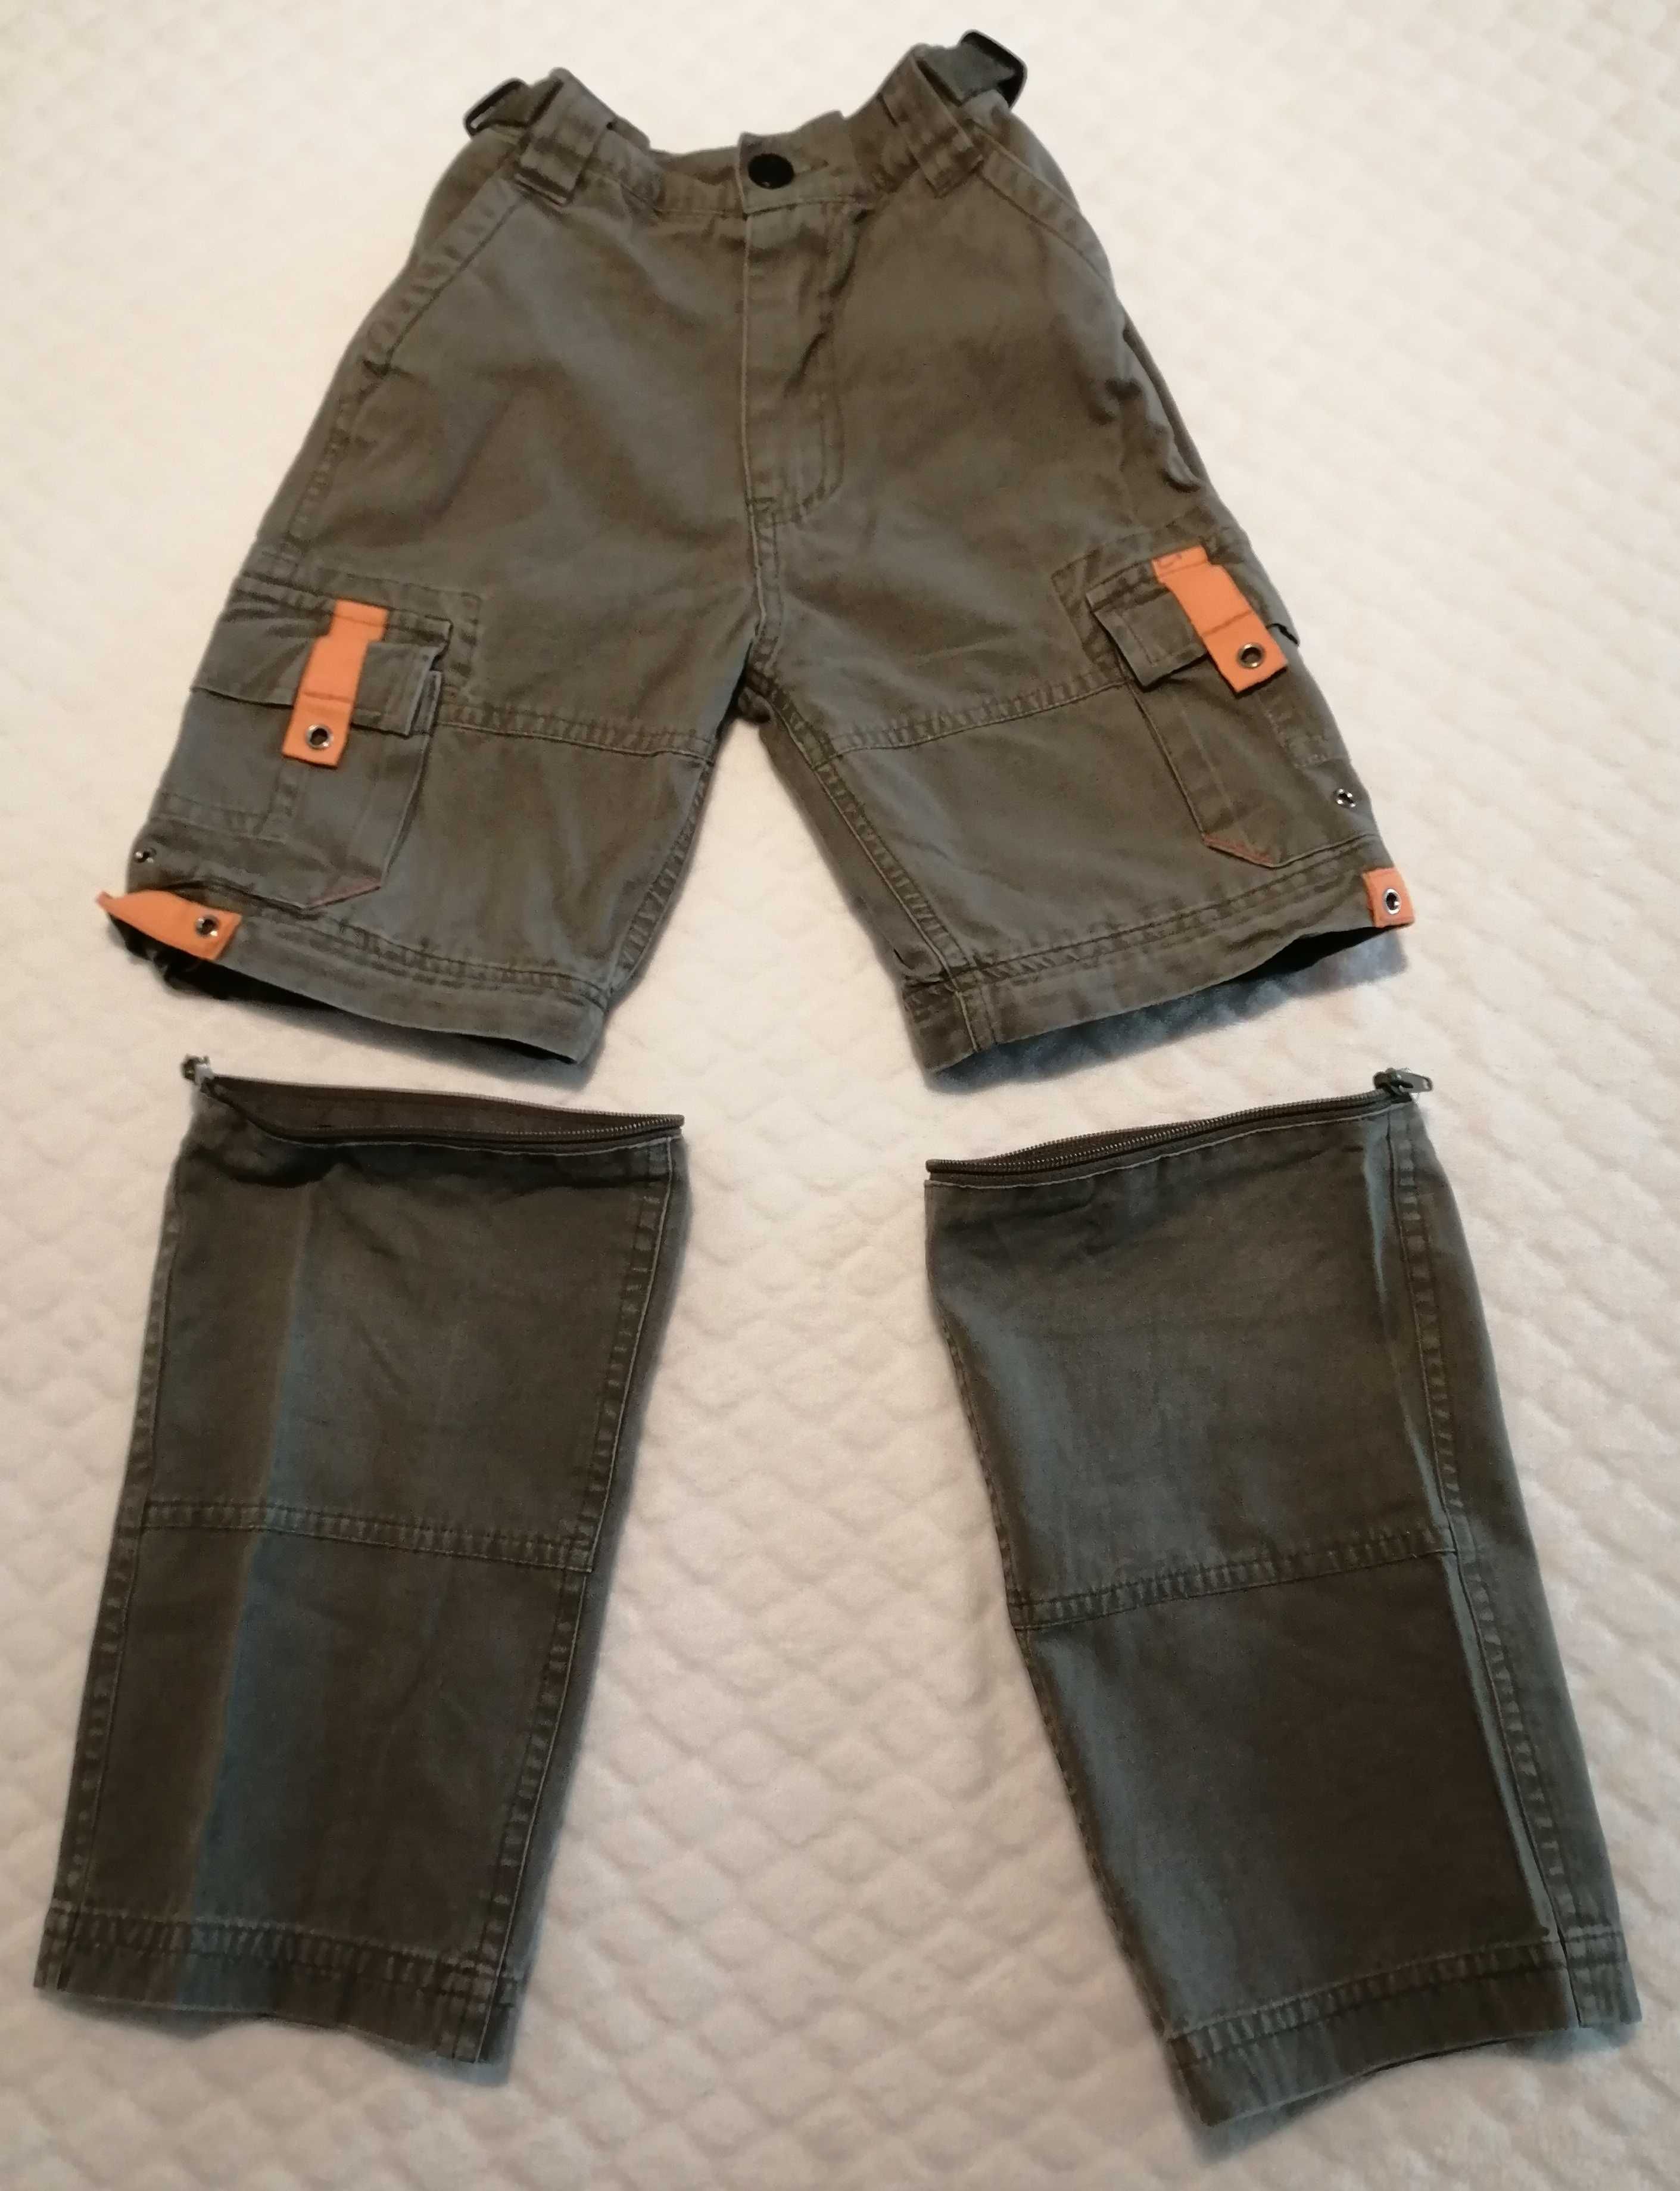 Spodnie z odpinanymi nogawkami, khaki, 110-116, Edgars (Odzież)